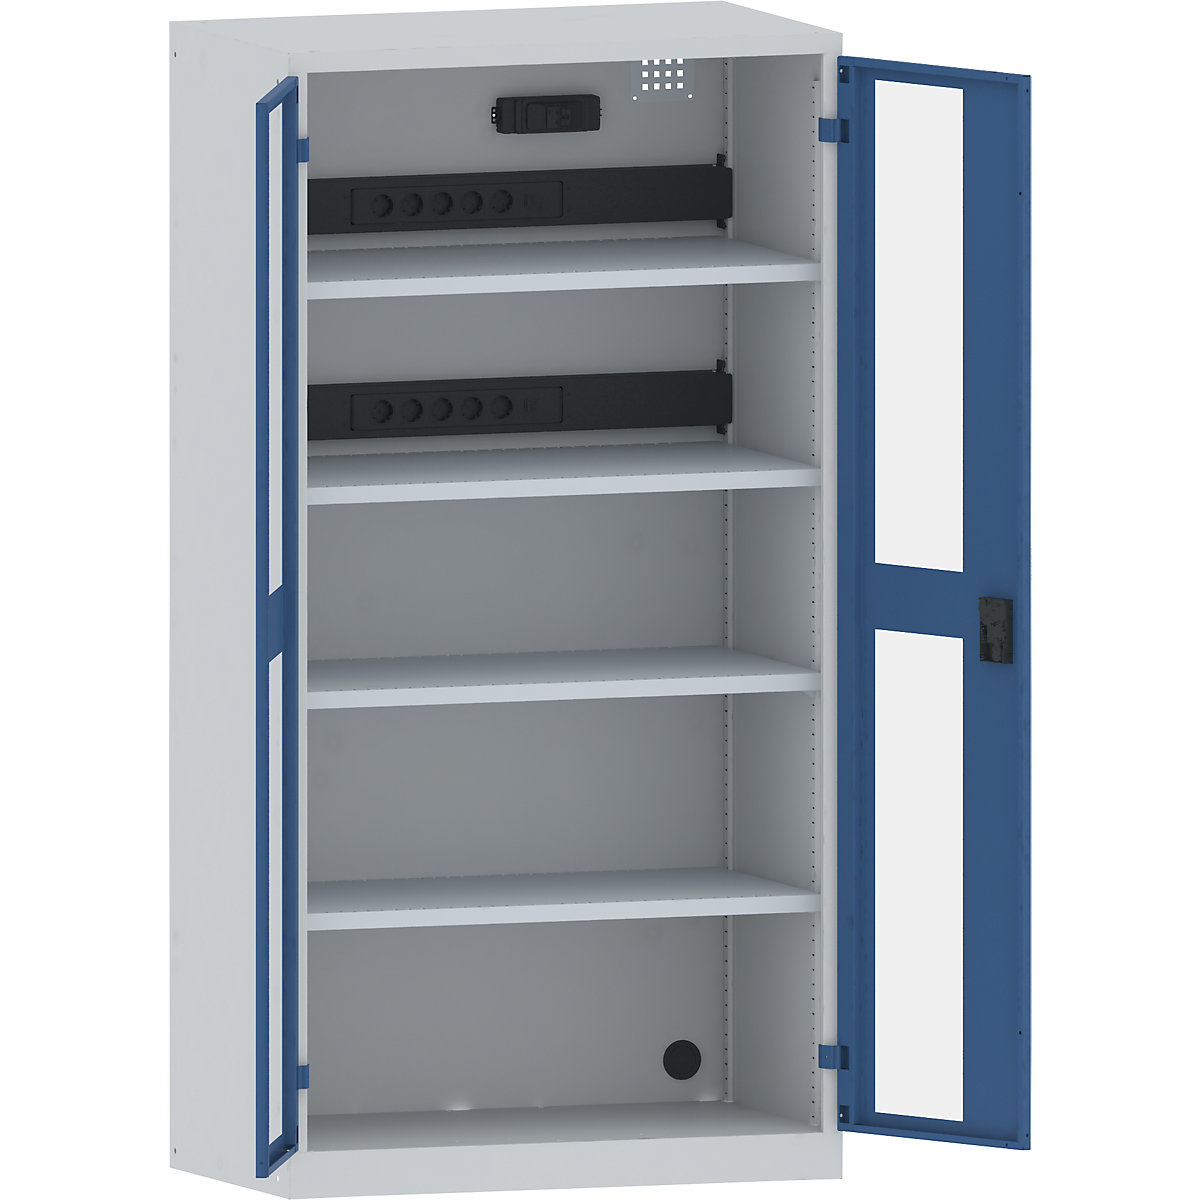 Accuoplaadkast met stroomvoorziening – LISTA, 4 legborden, deuren met zichtvenster, 2 contactdooslijsten op de achterkant met FI/LS-schakelaar, grijs/blauw-28